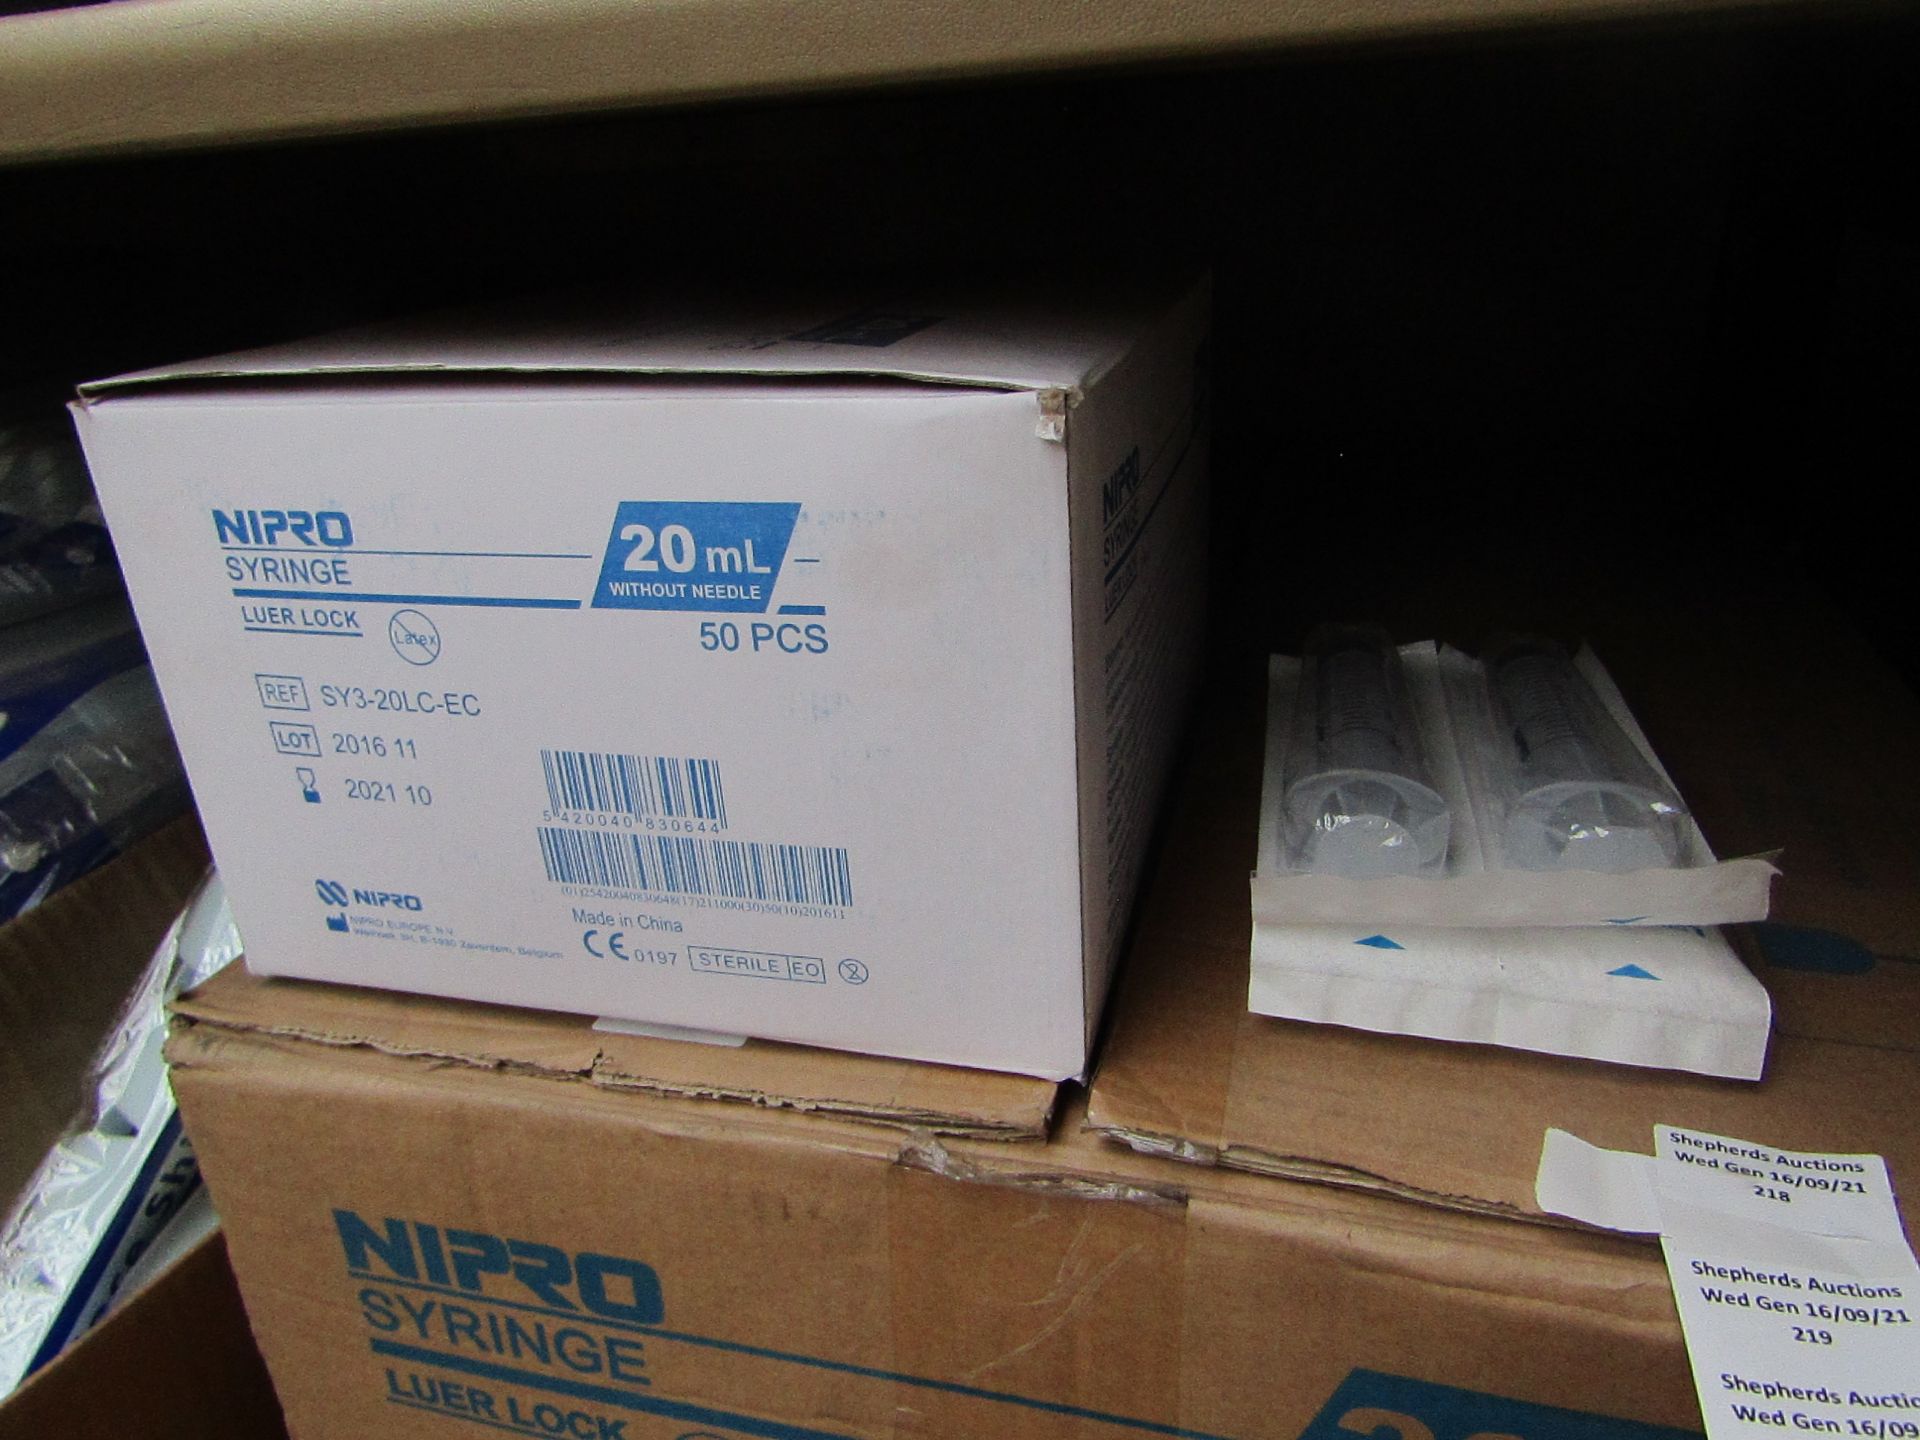 1x Box of 50 - Nipro syringe luer lock - unused & boxed.